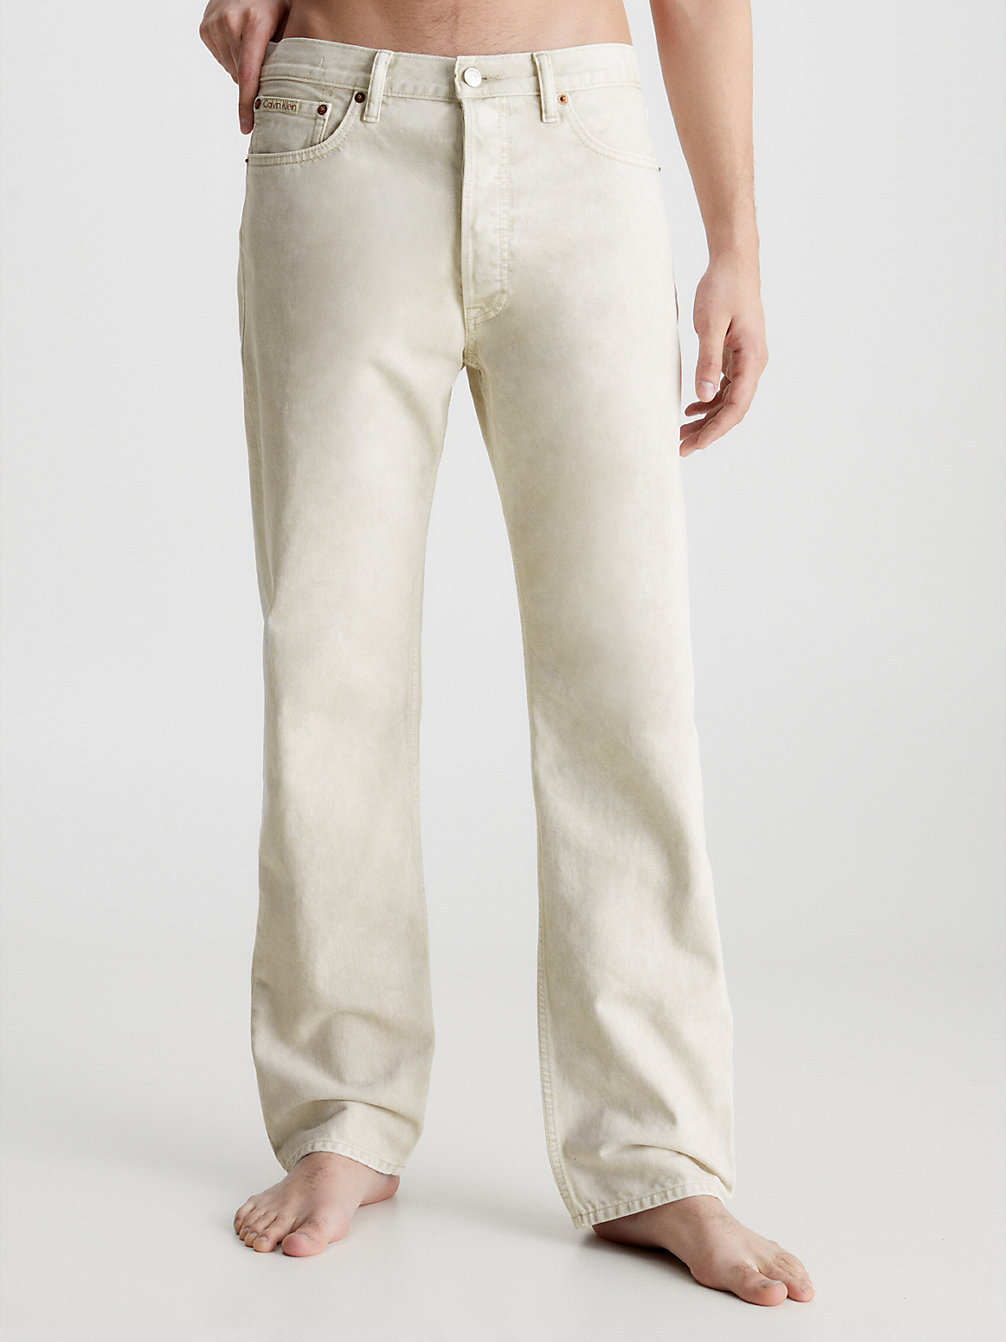 WHITE Unisex Classic Straight Jeans – CK Standards undefined Herren Calvin Klein